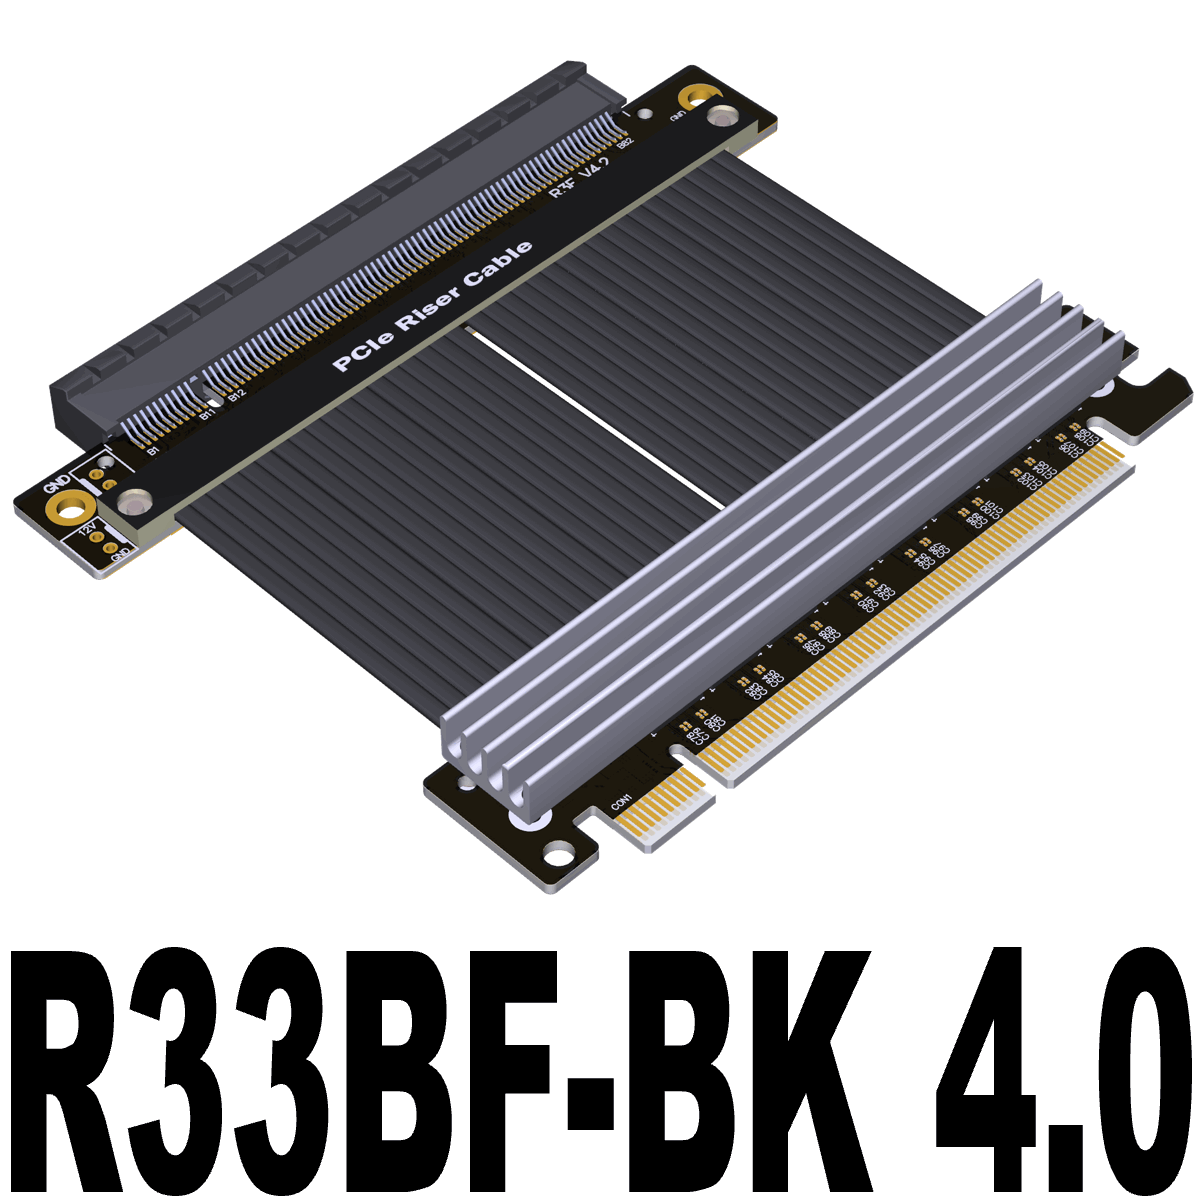 R33BF , R33BL , R33BH , R33BK 4.0